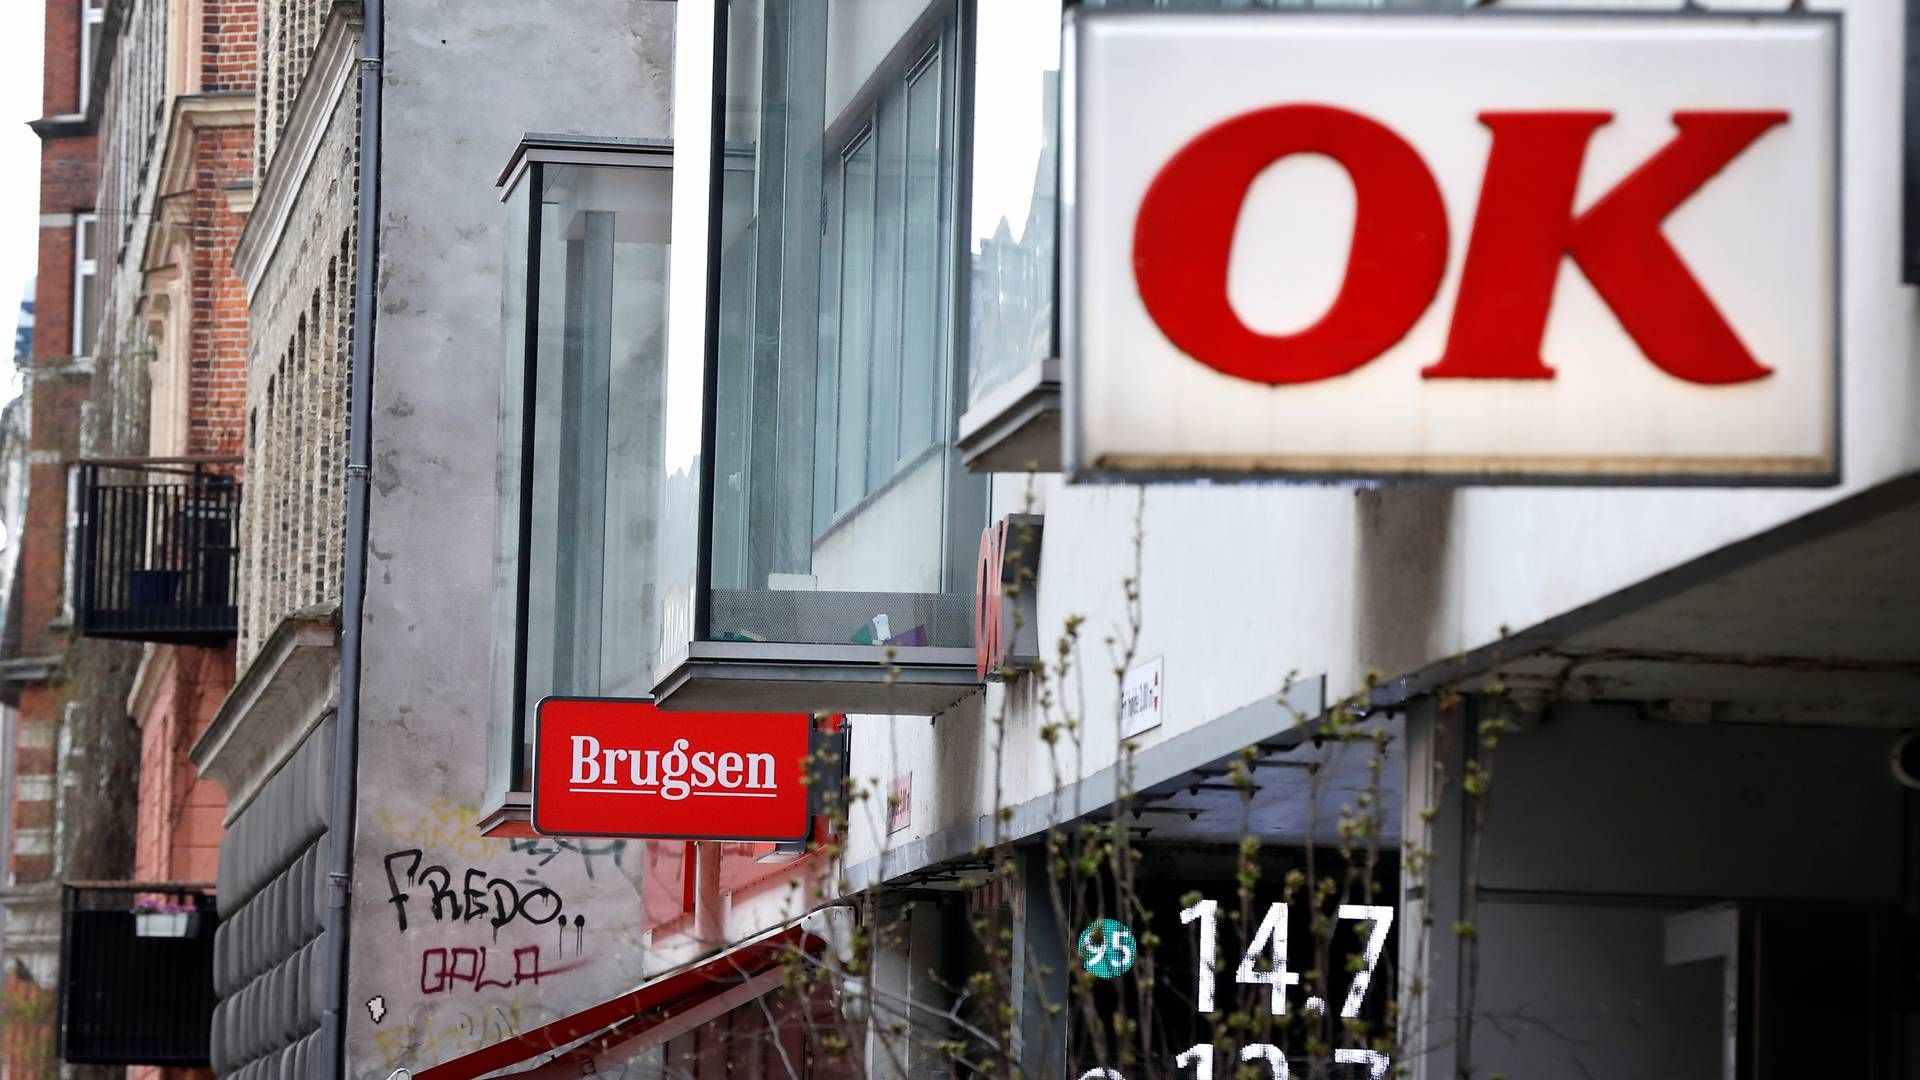 Coop blev tidligere i år opkøbt af OK efter flere år med milliardstore underskud. | Foto: Jens Dresling